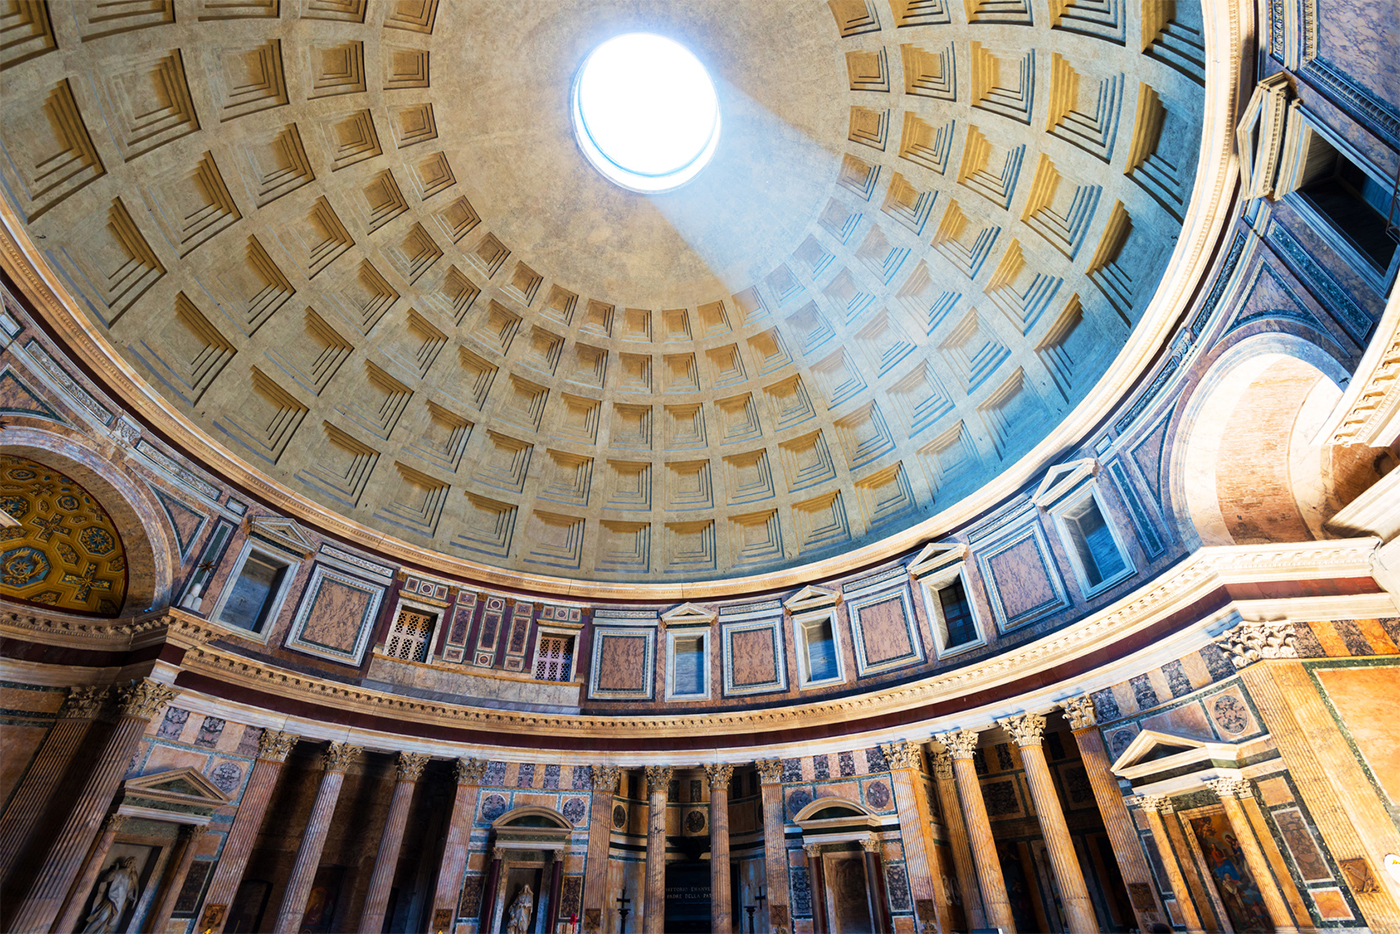 L'impressionante prospettiva della cupola del Pantheon con la luce che filtra dall'oculus